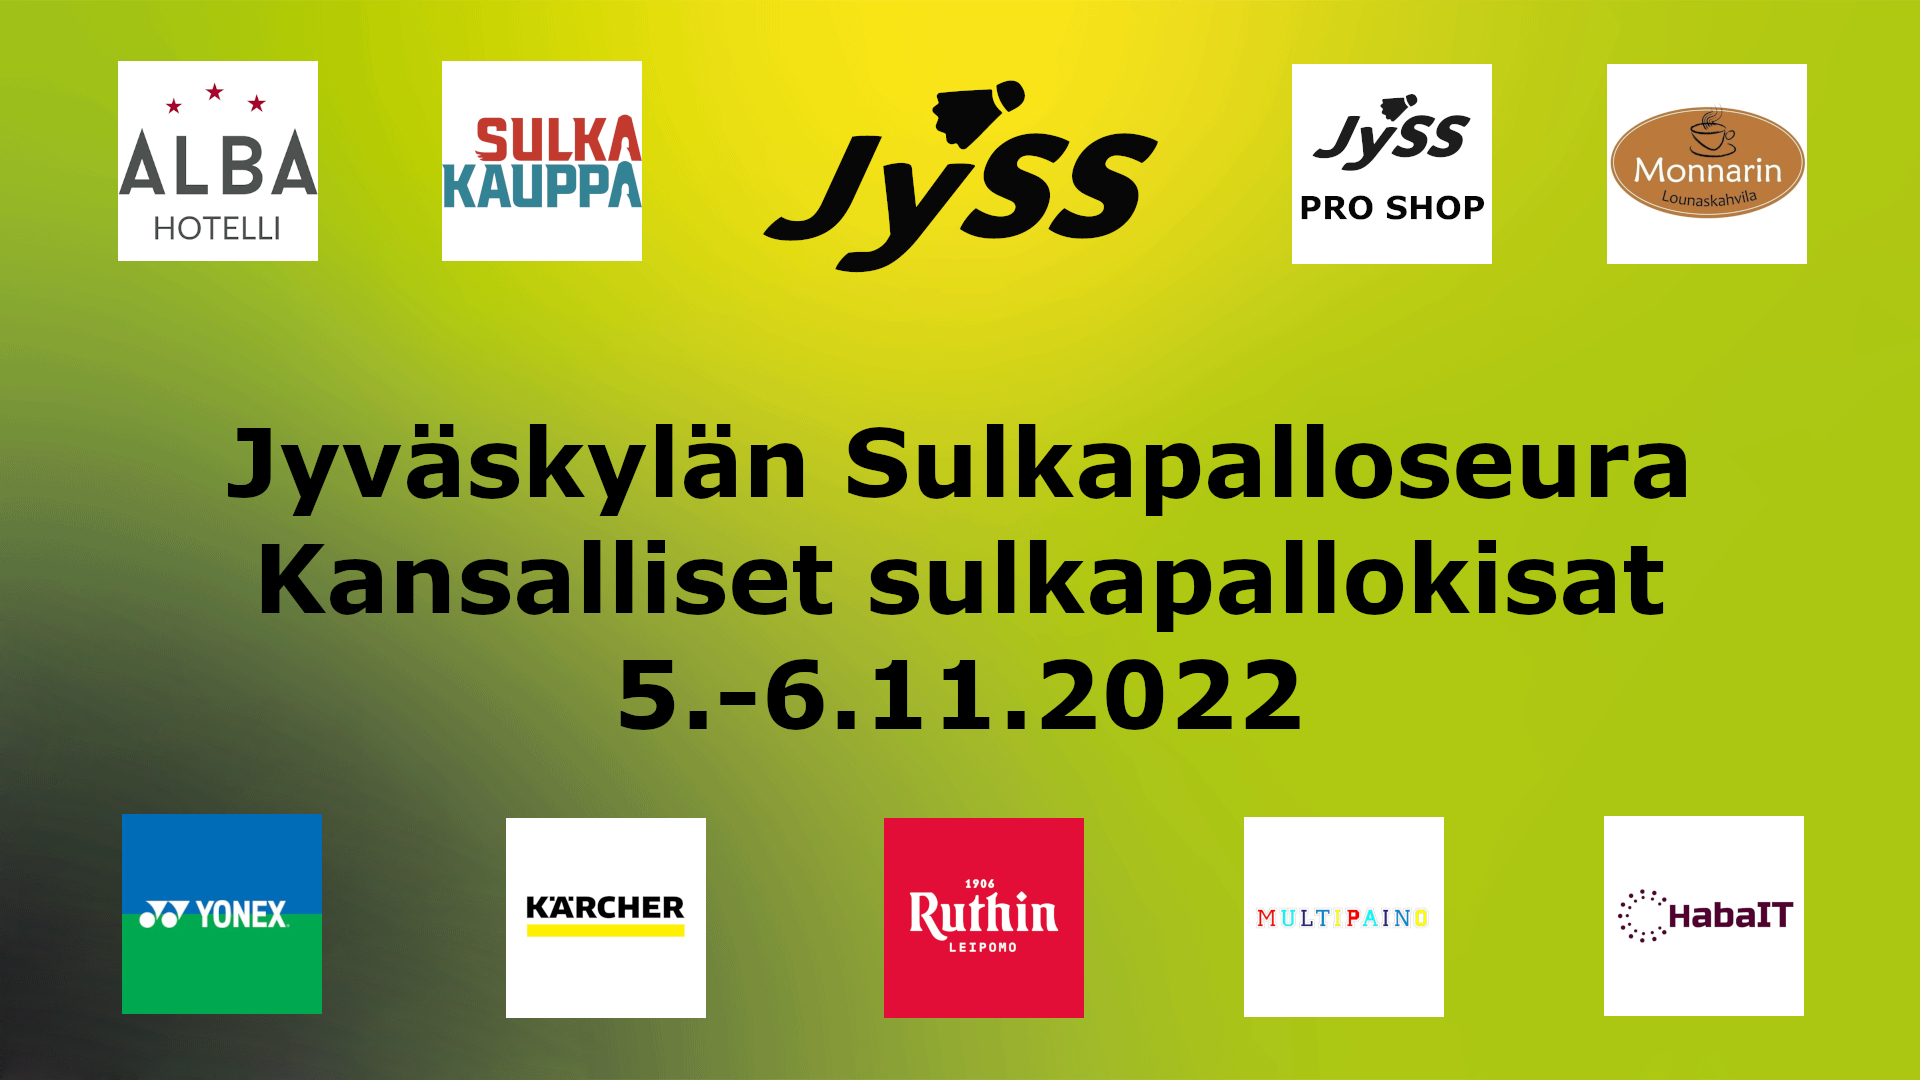 JYSS_kansalliset_5.-6.11.2022_uusi.jpg